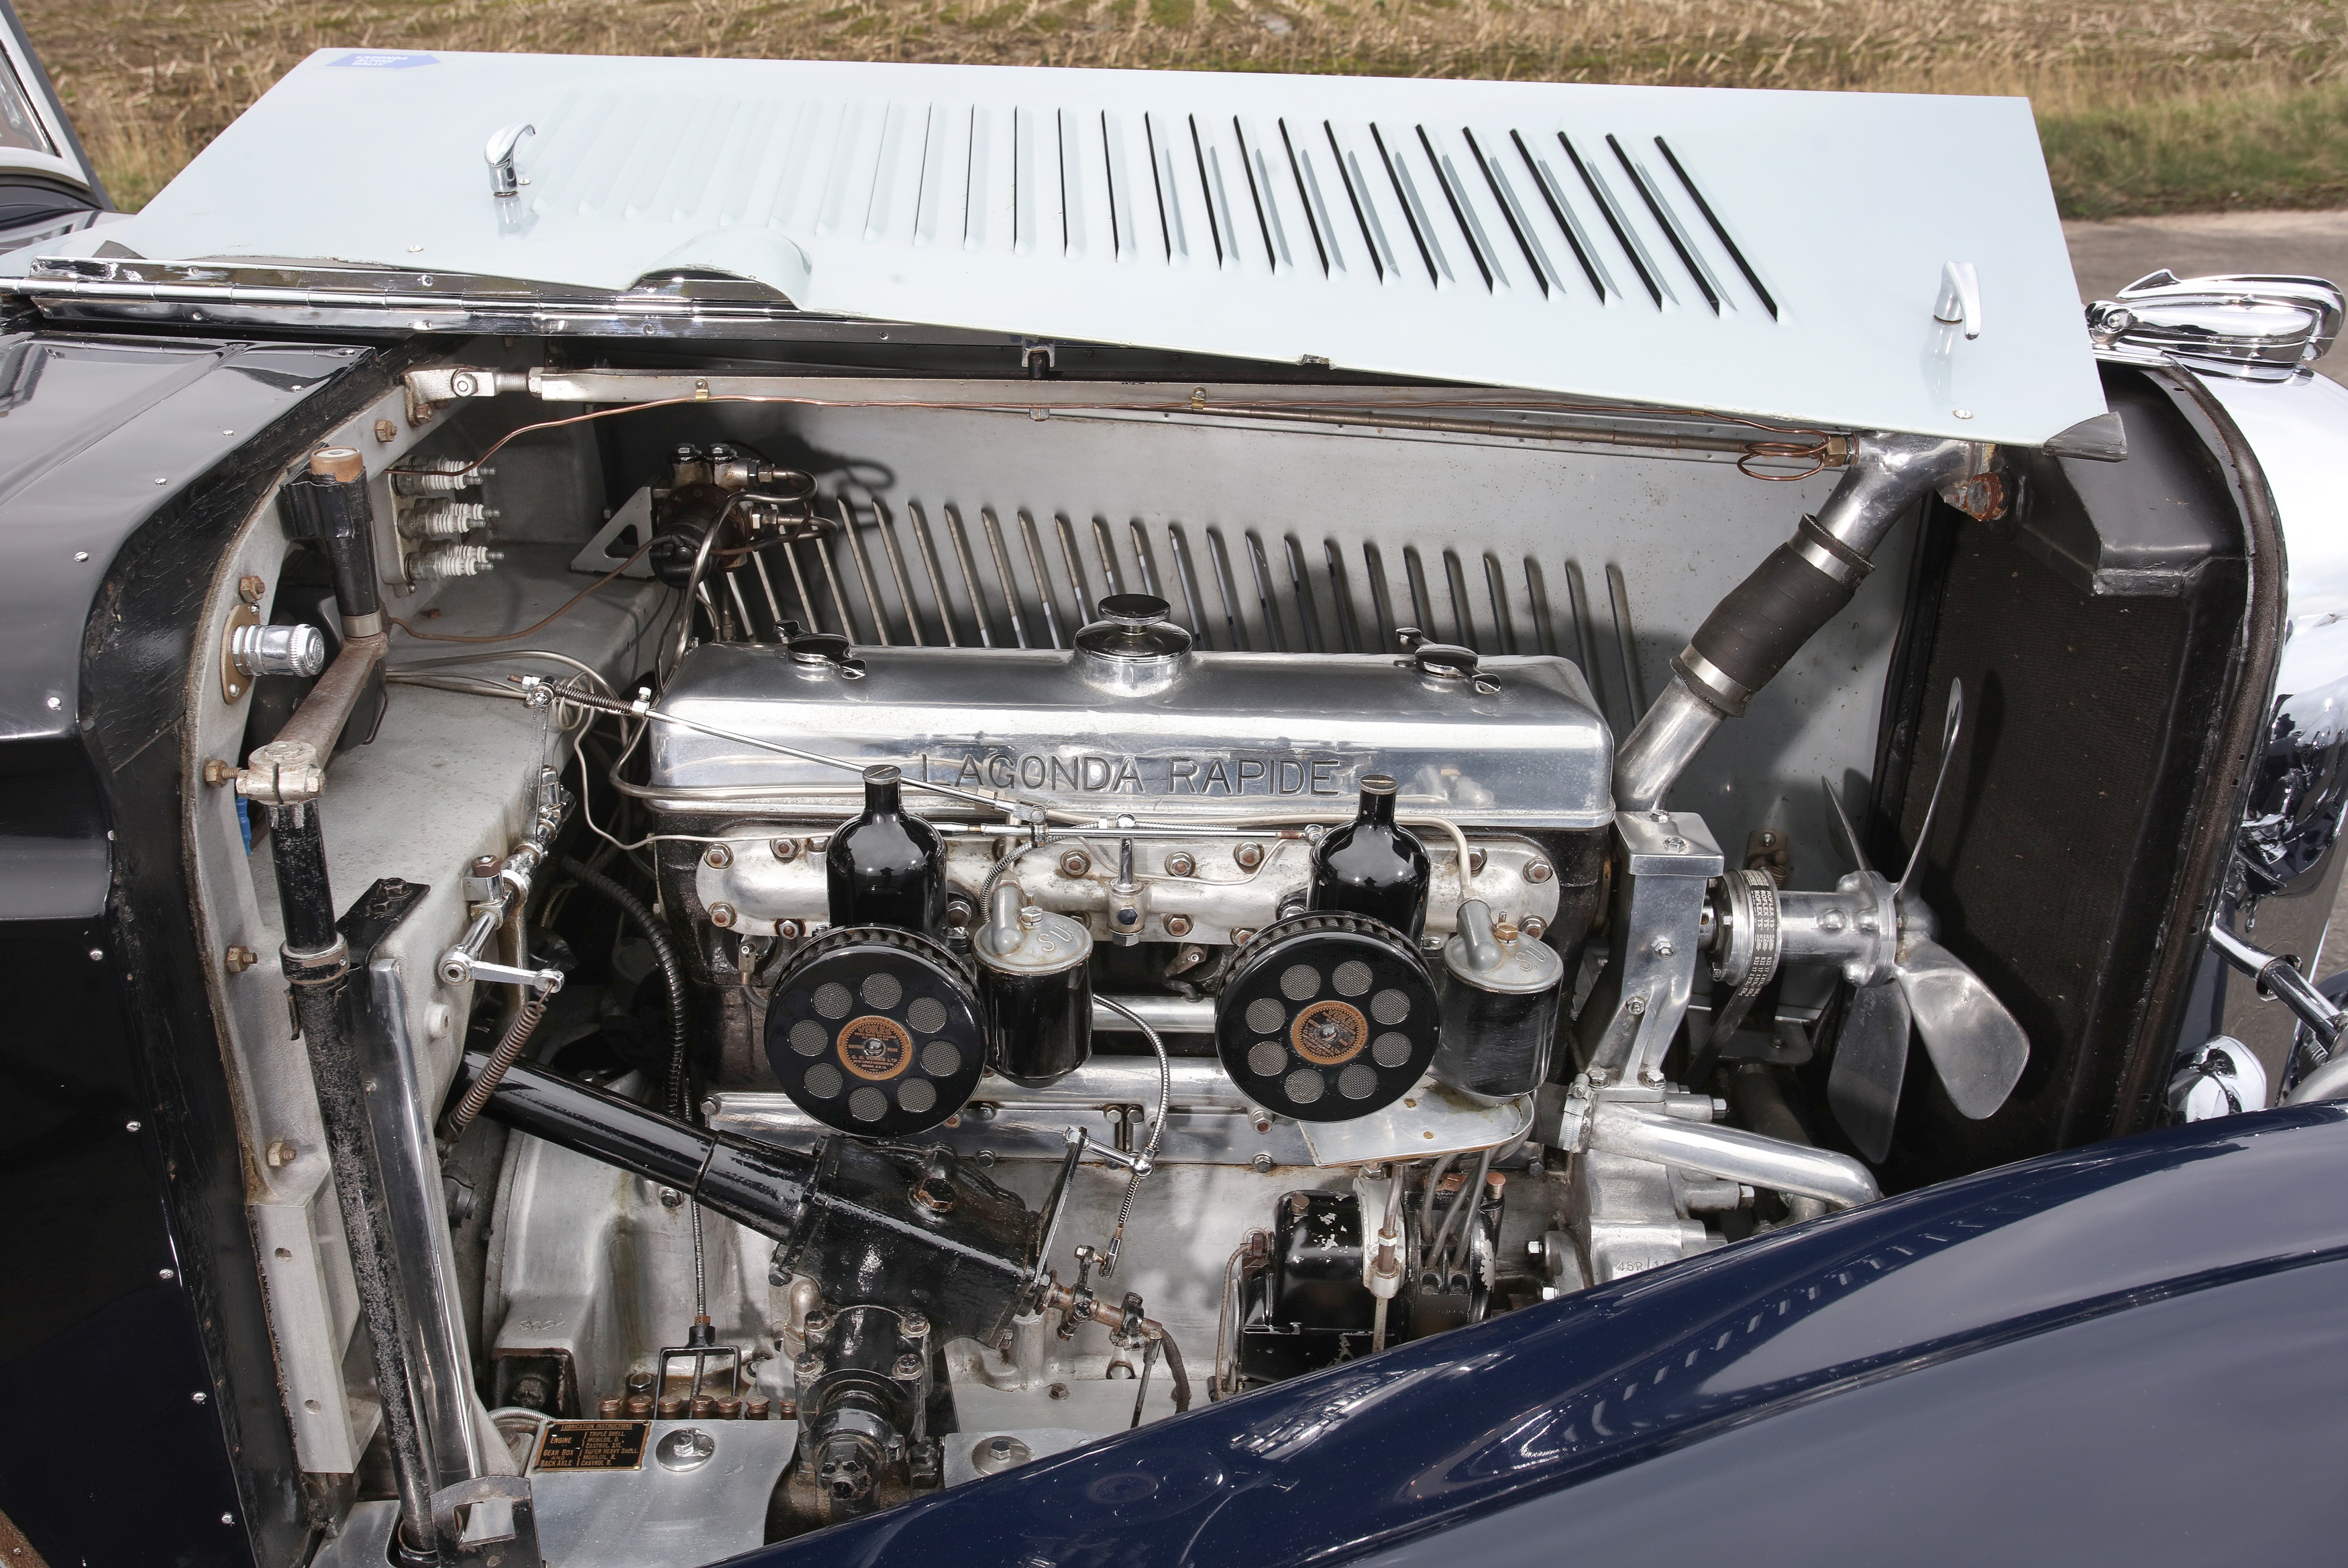 Lagonda Rapide engine